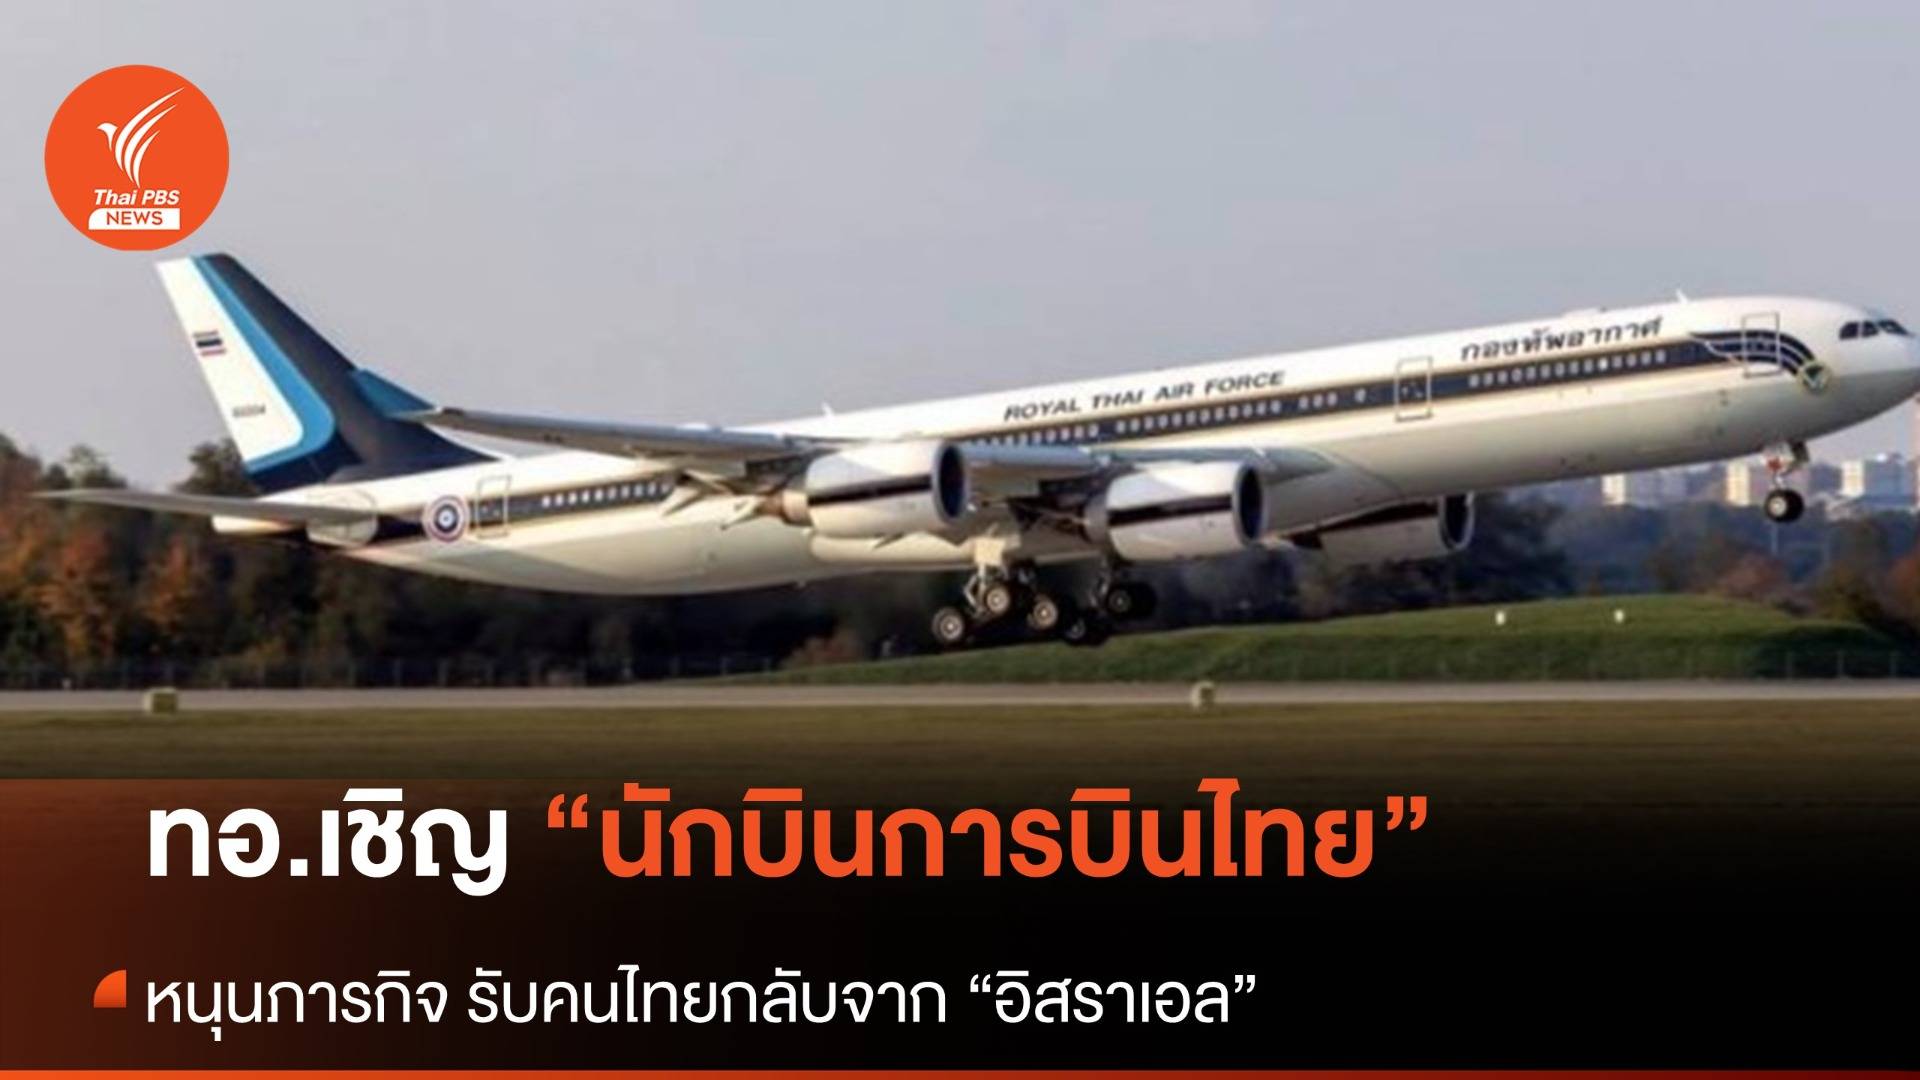 ทอ.เชิญนักบิน "การบินไทย" หนุนภารกิจรับคนไทยกลับจากอิสราเอล